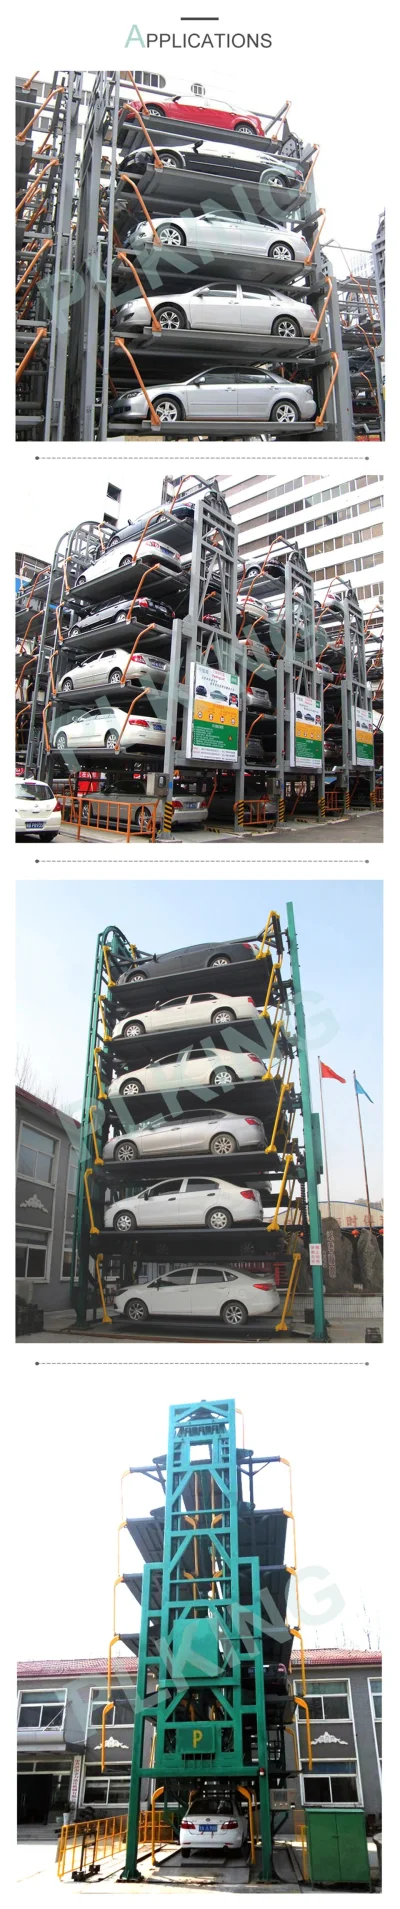 czajnapl - Na #Aliexpress można sobie zakupić platformę do parkowania za $5tys - kilk...